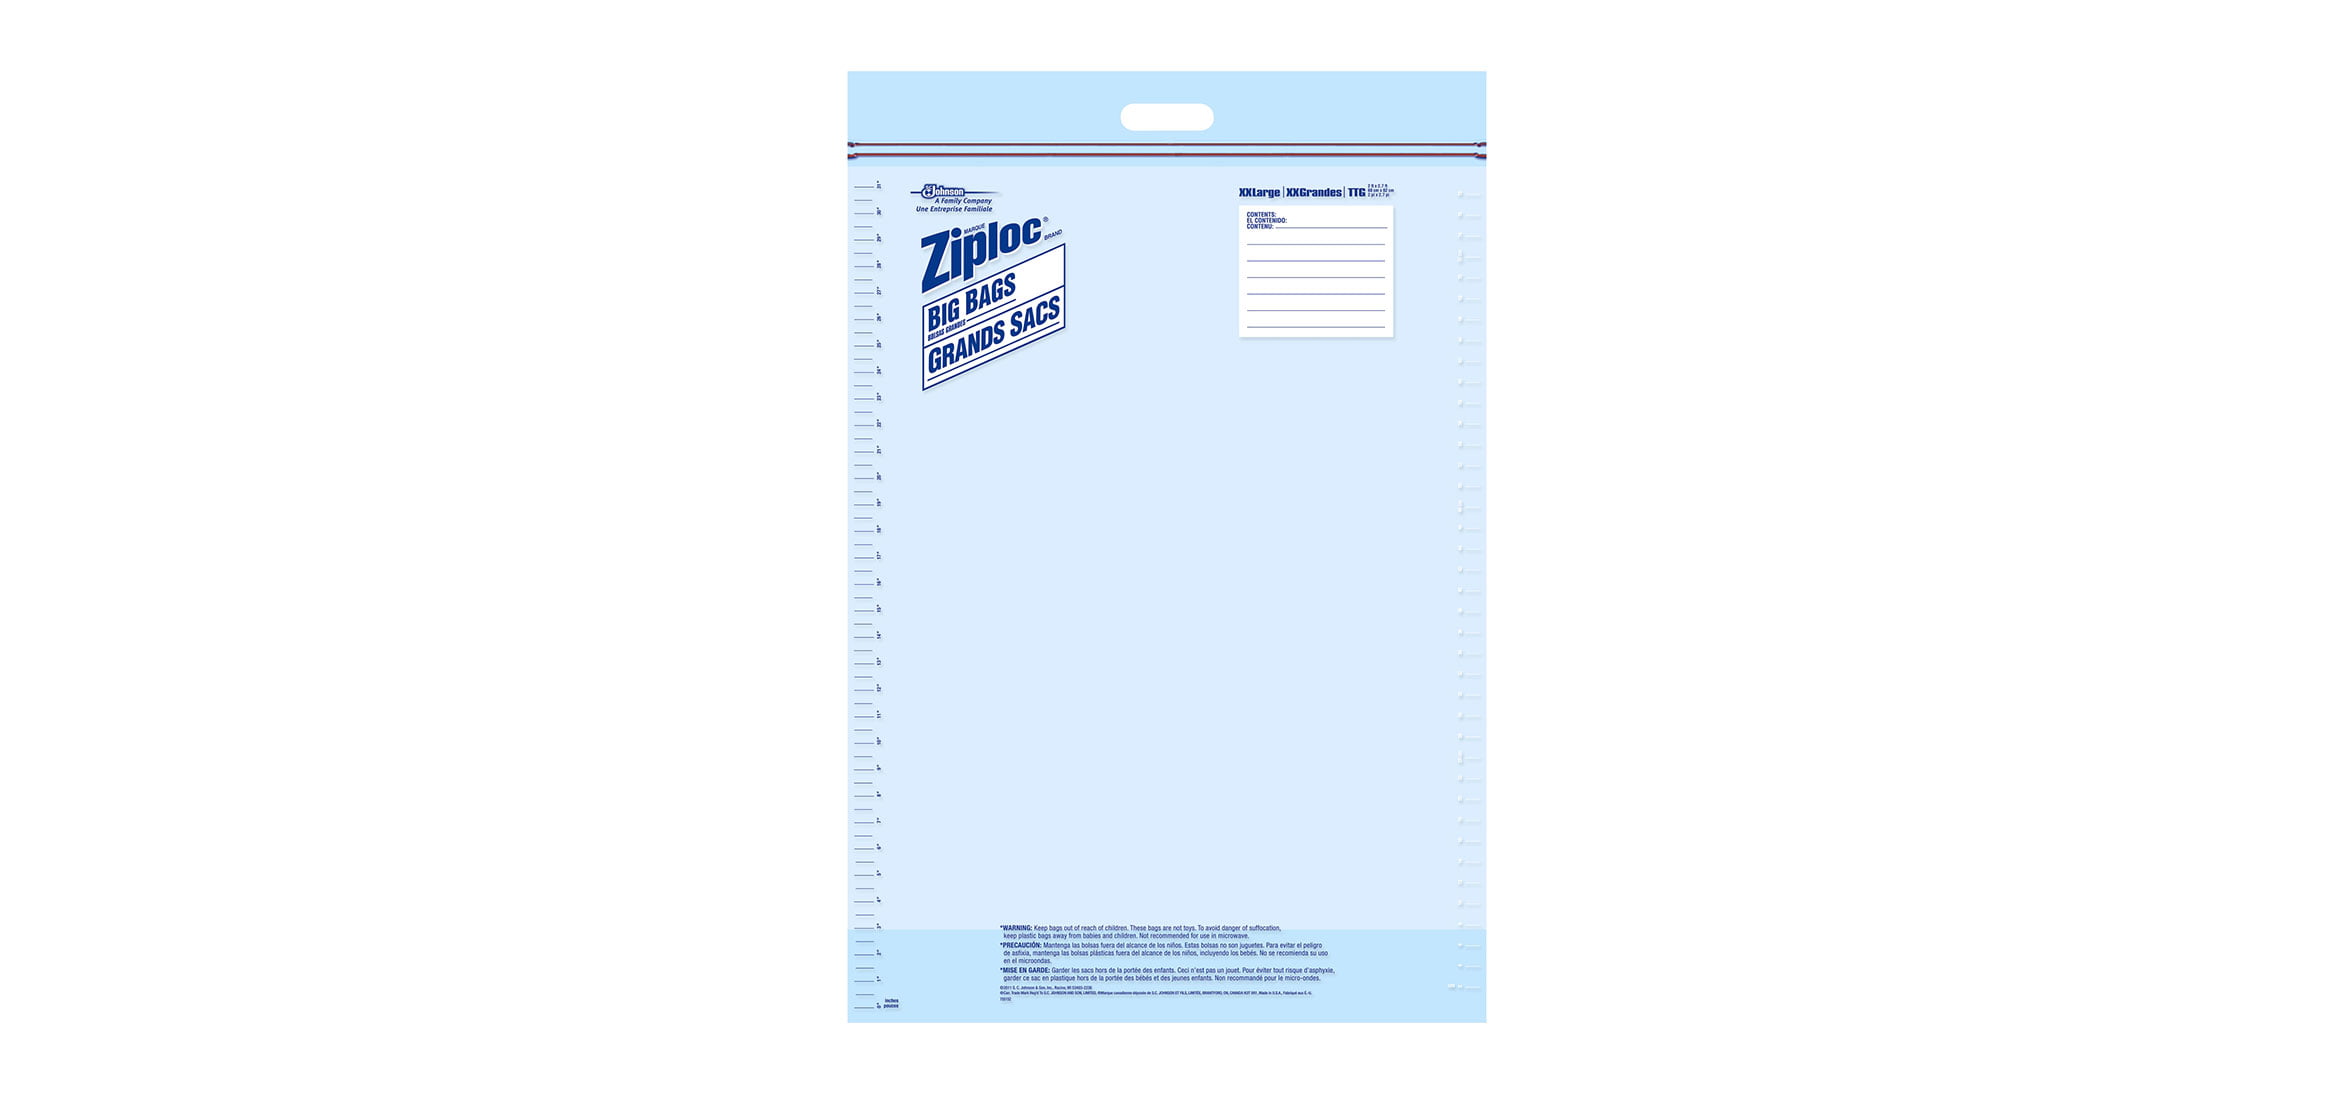 Double Zipper Storage Bags by Ziploc® SJN314470